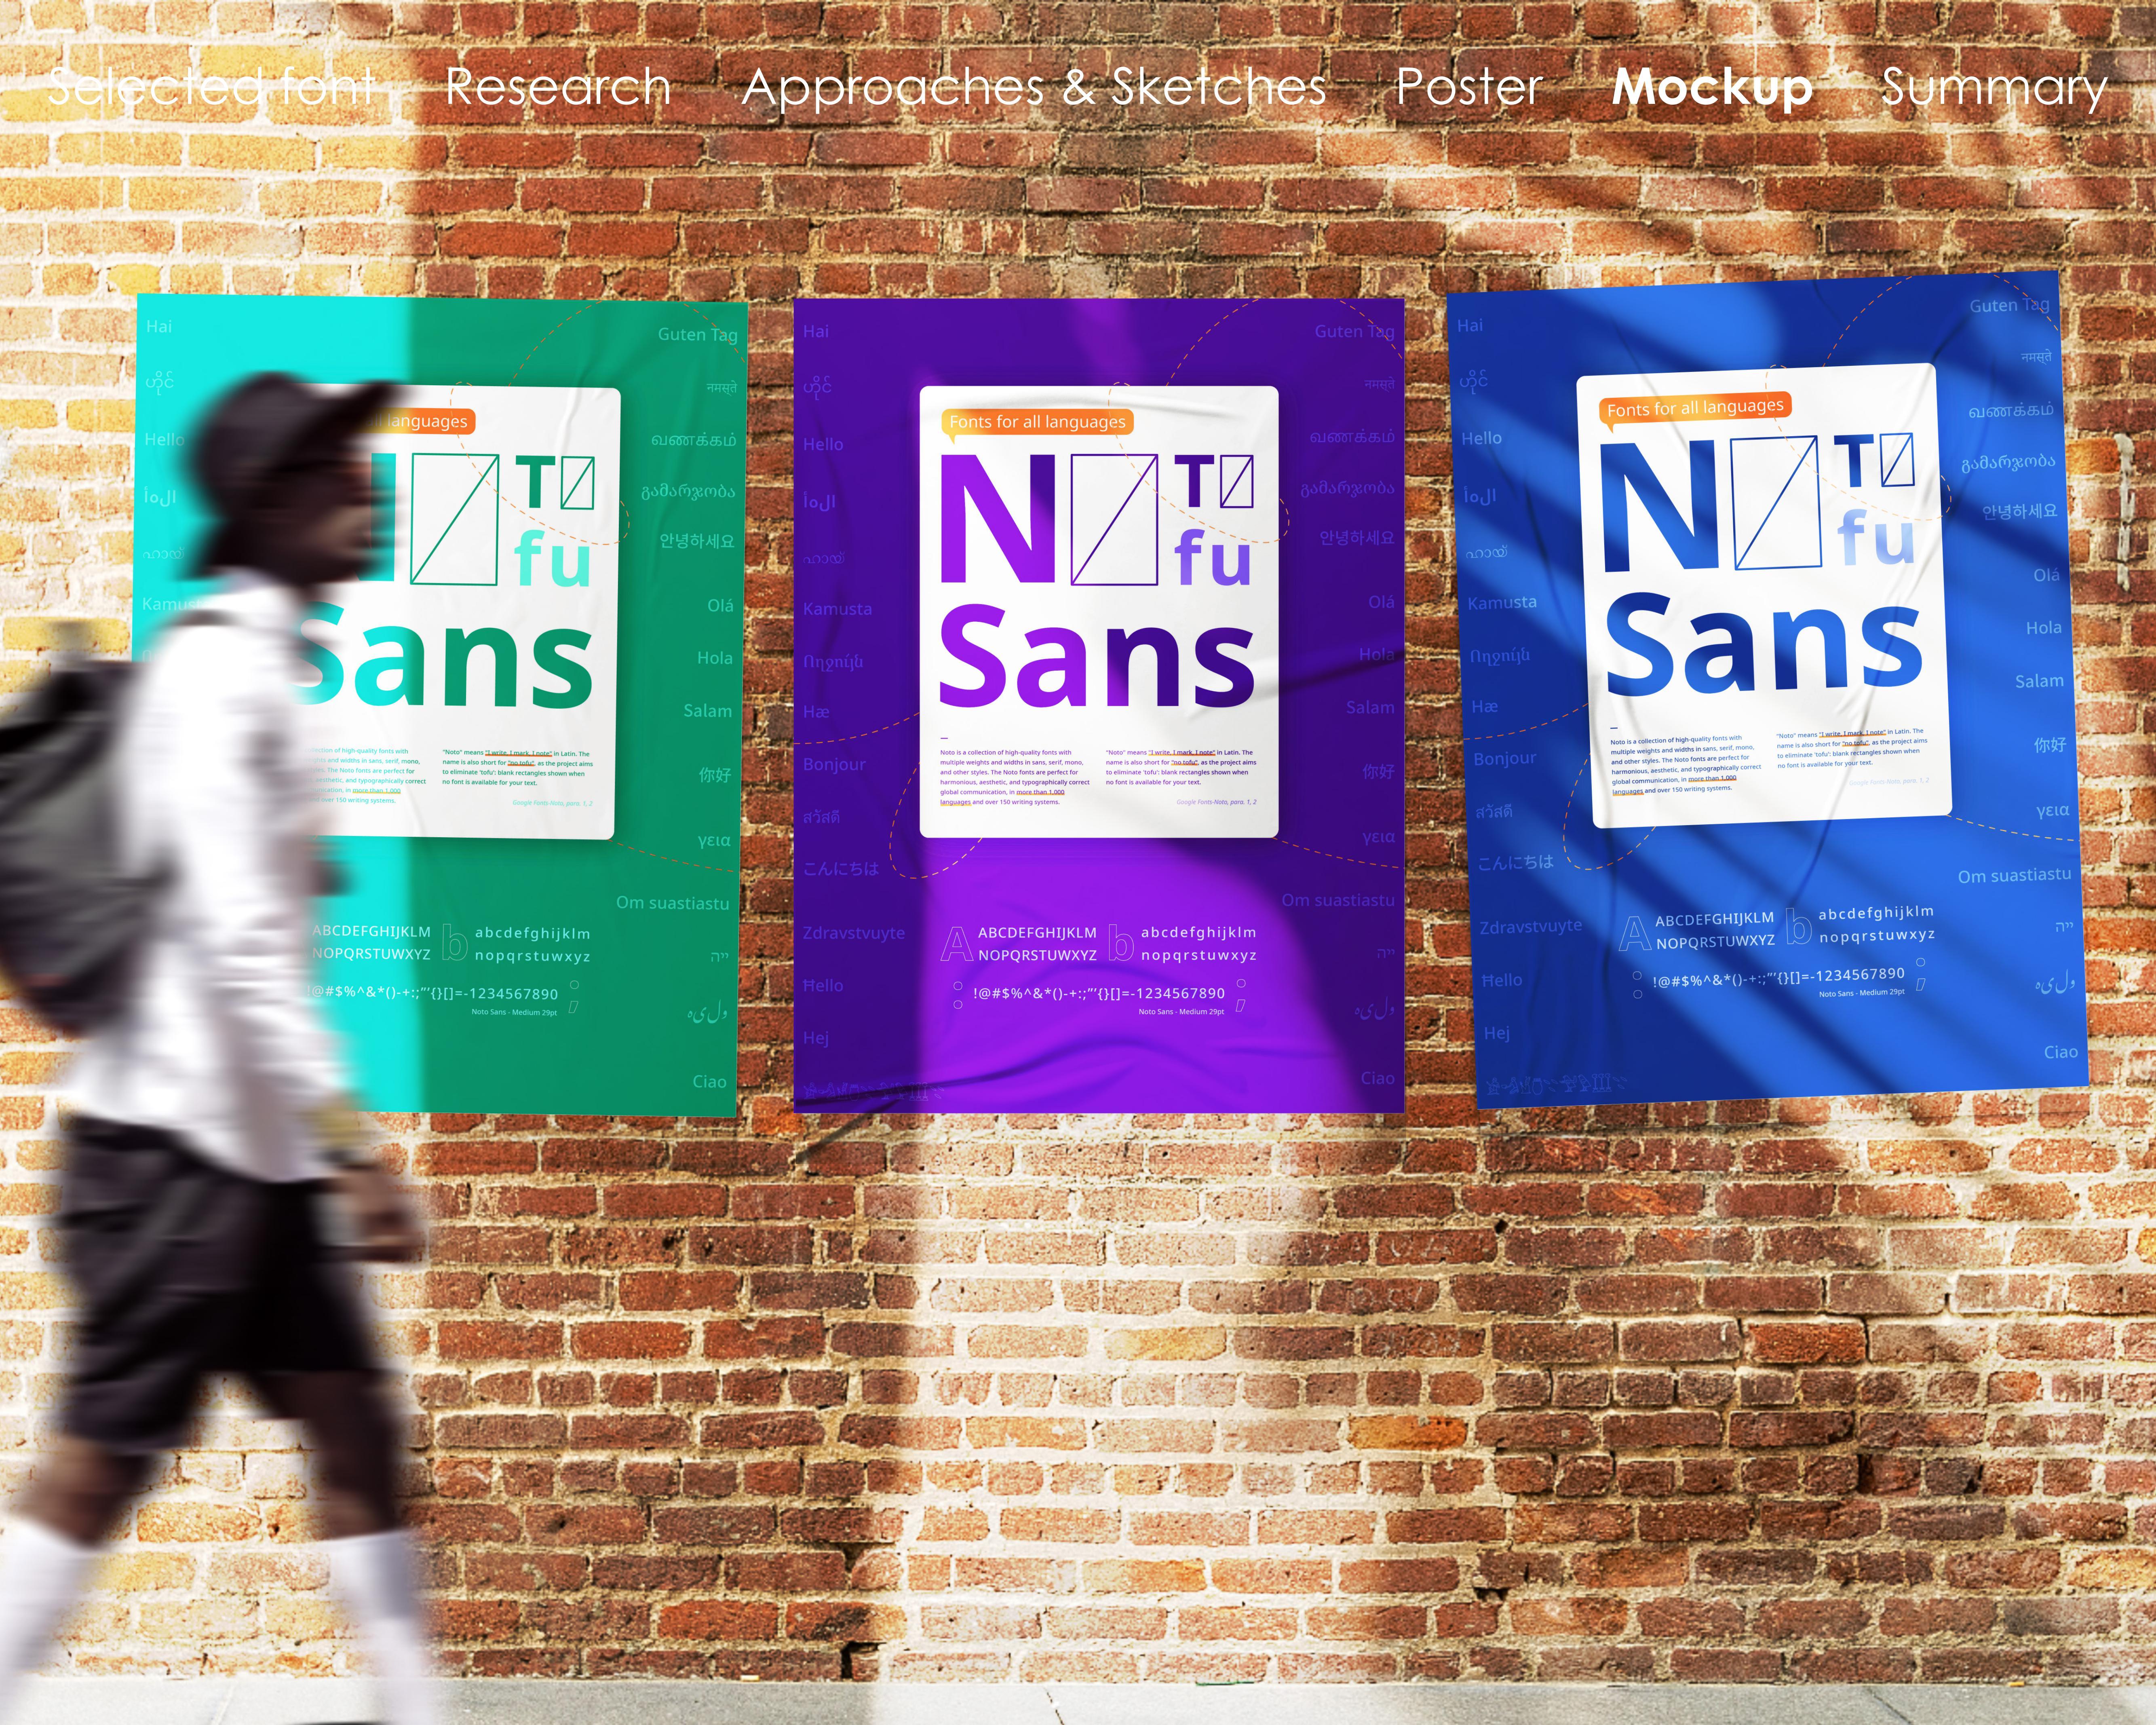 Noto Sans Nüshu, type design with multiple unknowns